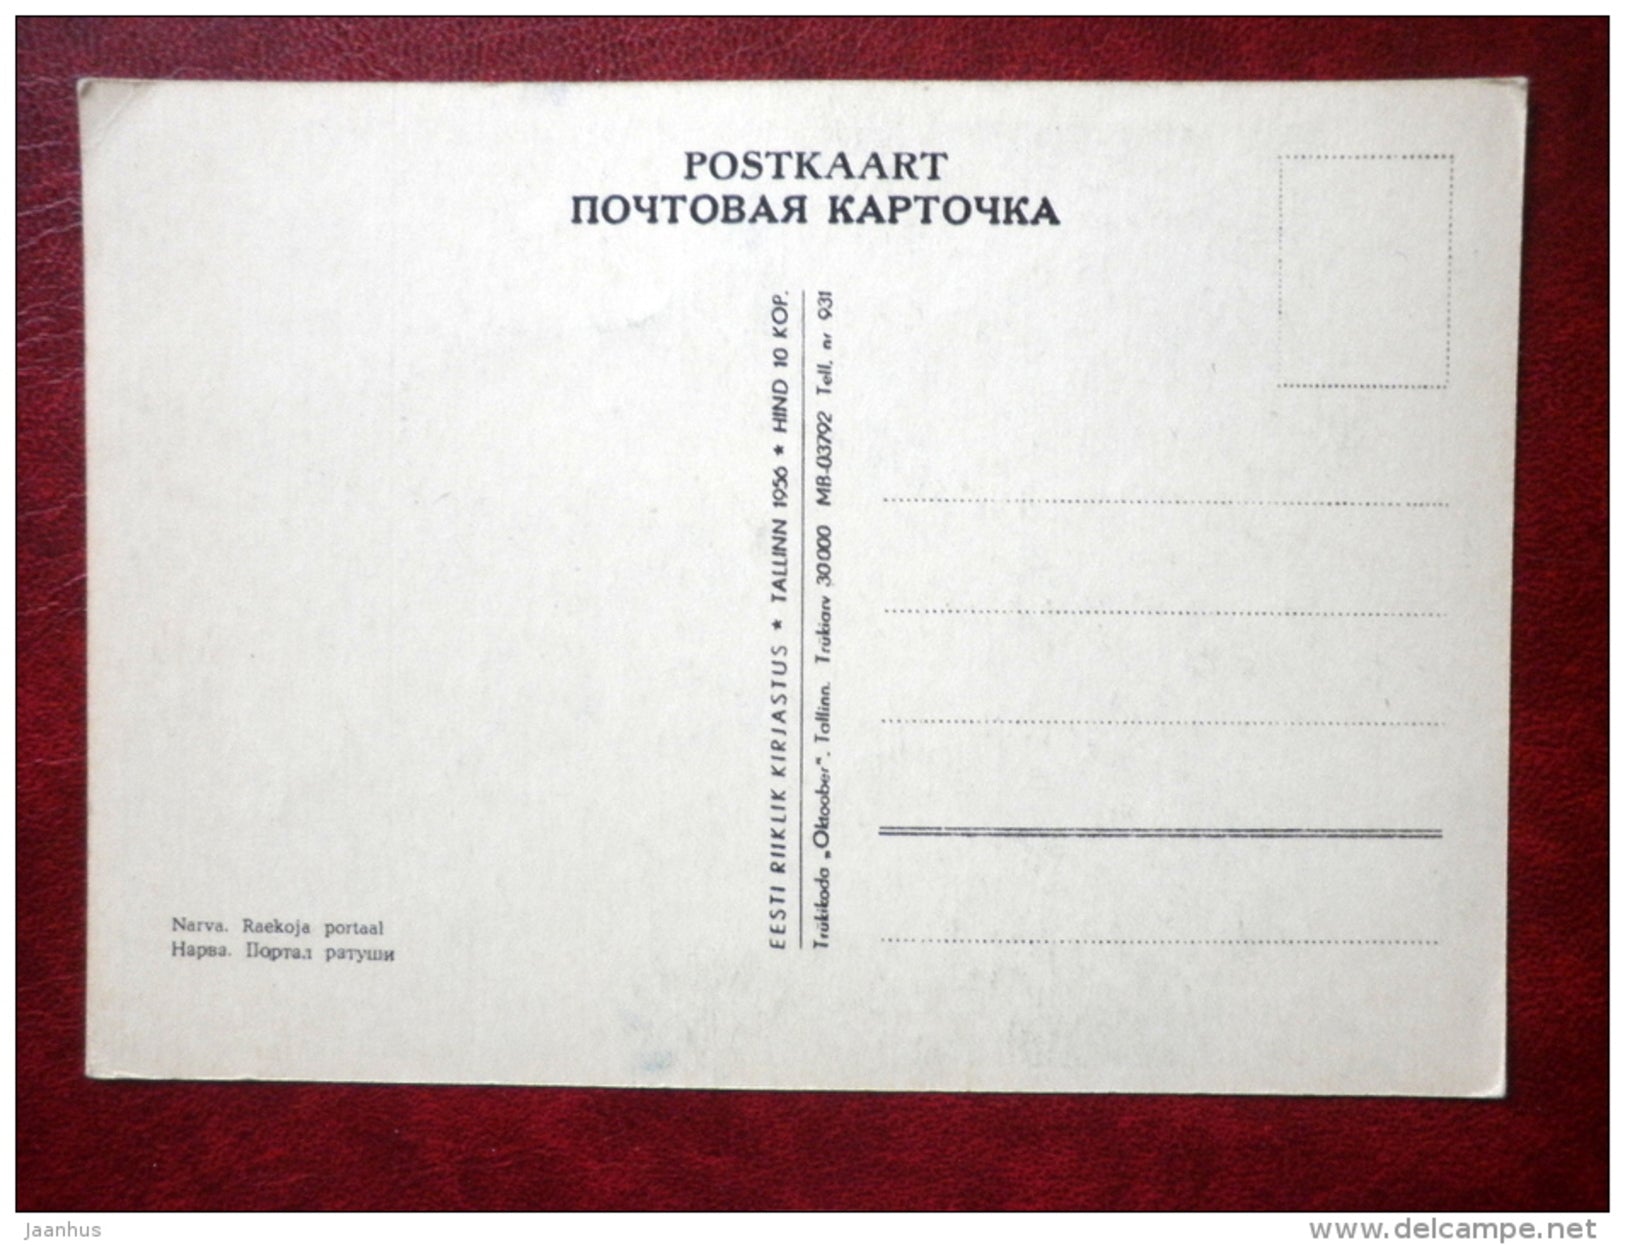 Town Hall portal - Narva - 1956 - Estonia USSR - unused - JH Postcards